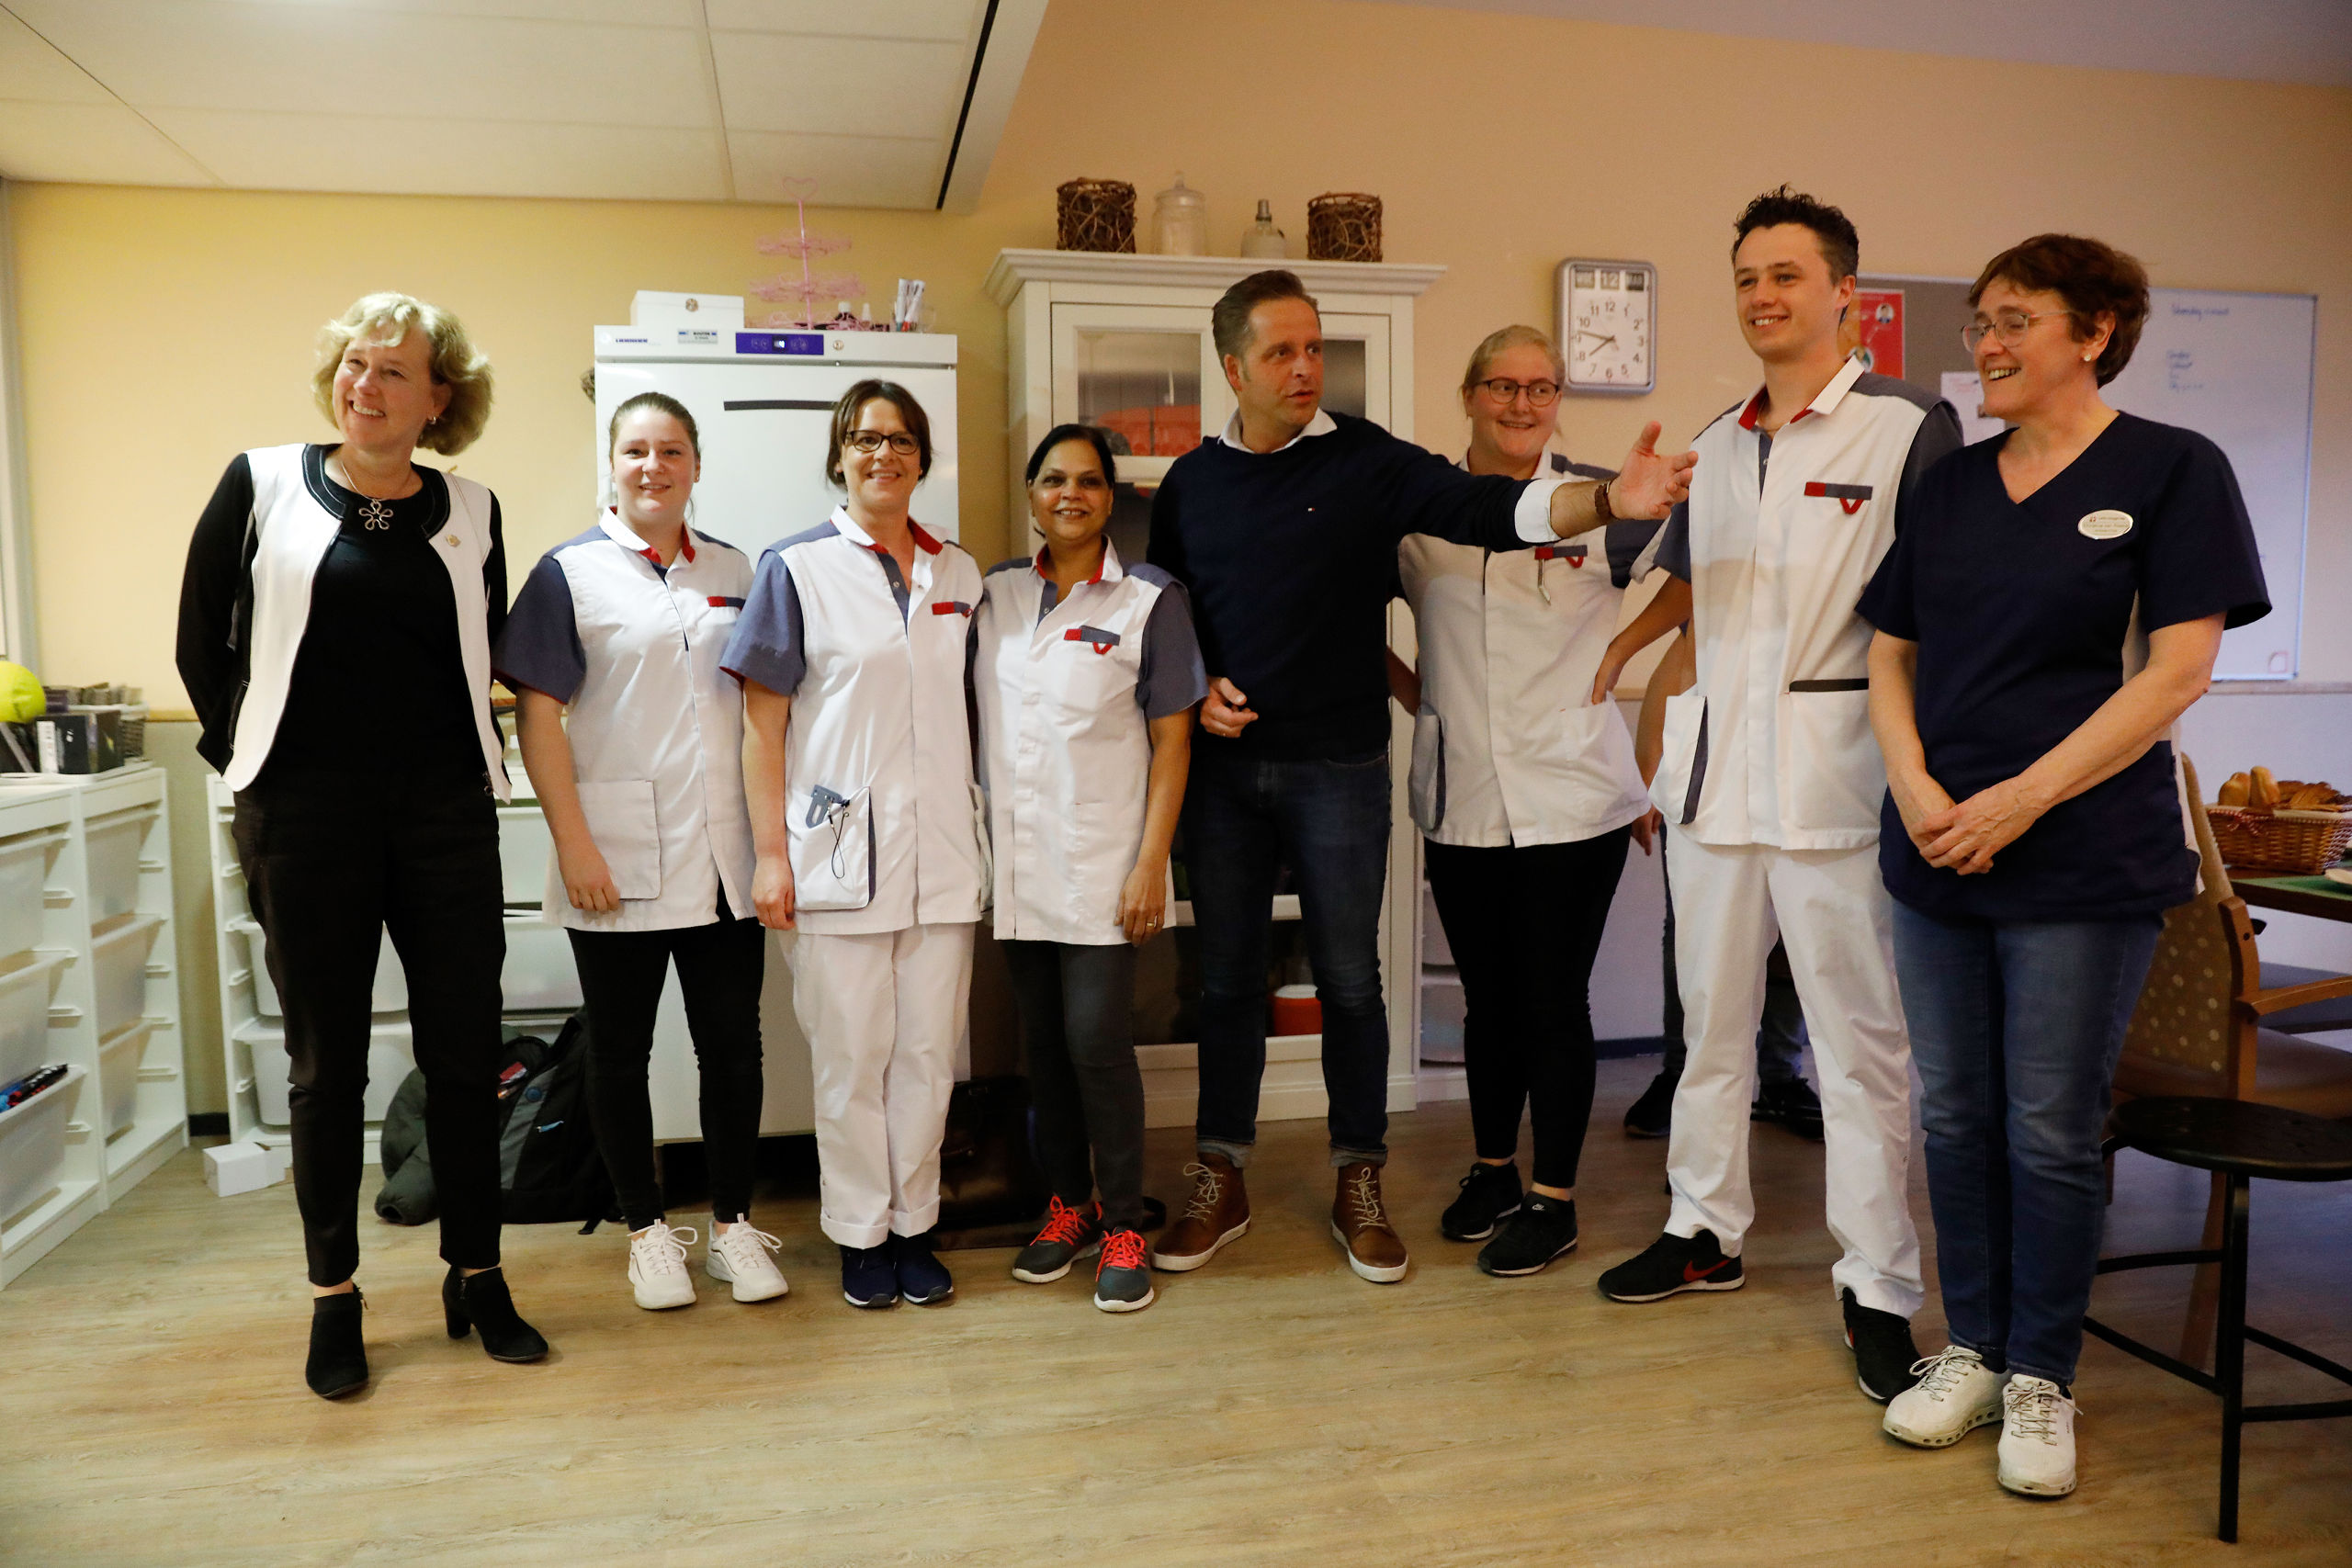 Vicepremier en minister Hugo de Jonge (Volksgezondheid, Welzijn en Sport) tijdens een bezoek aan de Lelie zorggroep. Hij verraste verpleegkundigen met een ontbijt. 